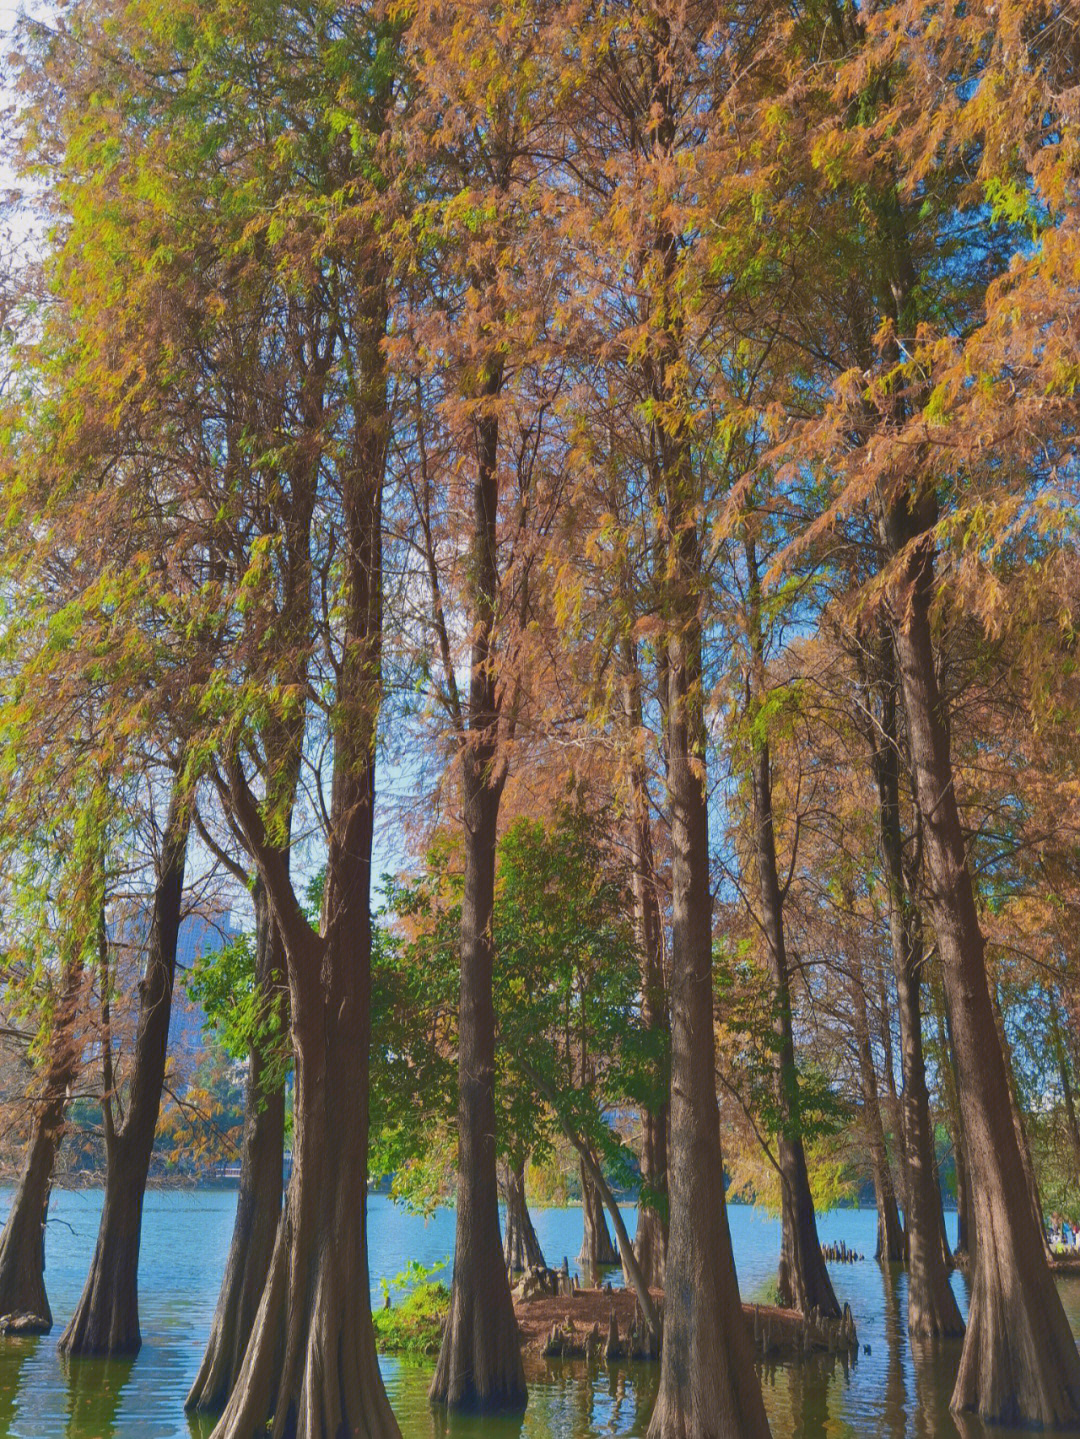 洪湖公园春天里的落羽杉空气中飘过一阵阵香味,一抹暖阳就温暖了这个